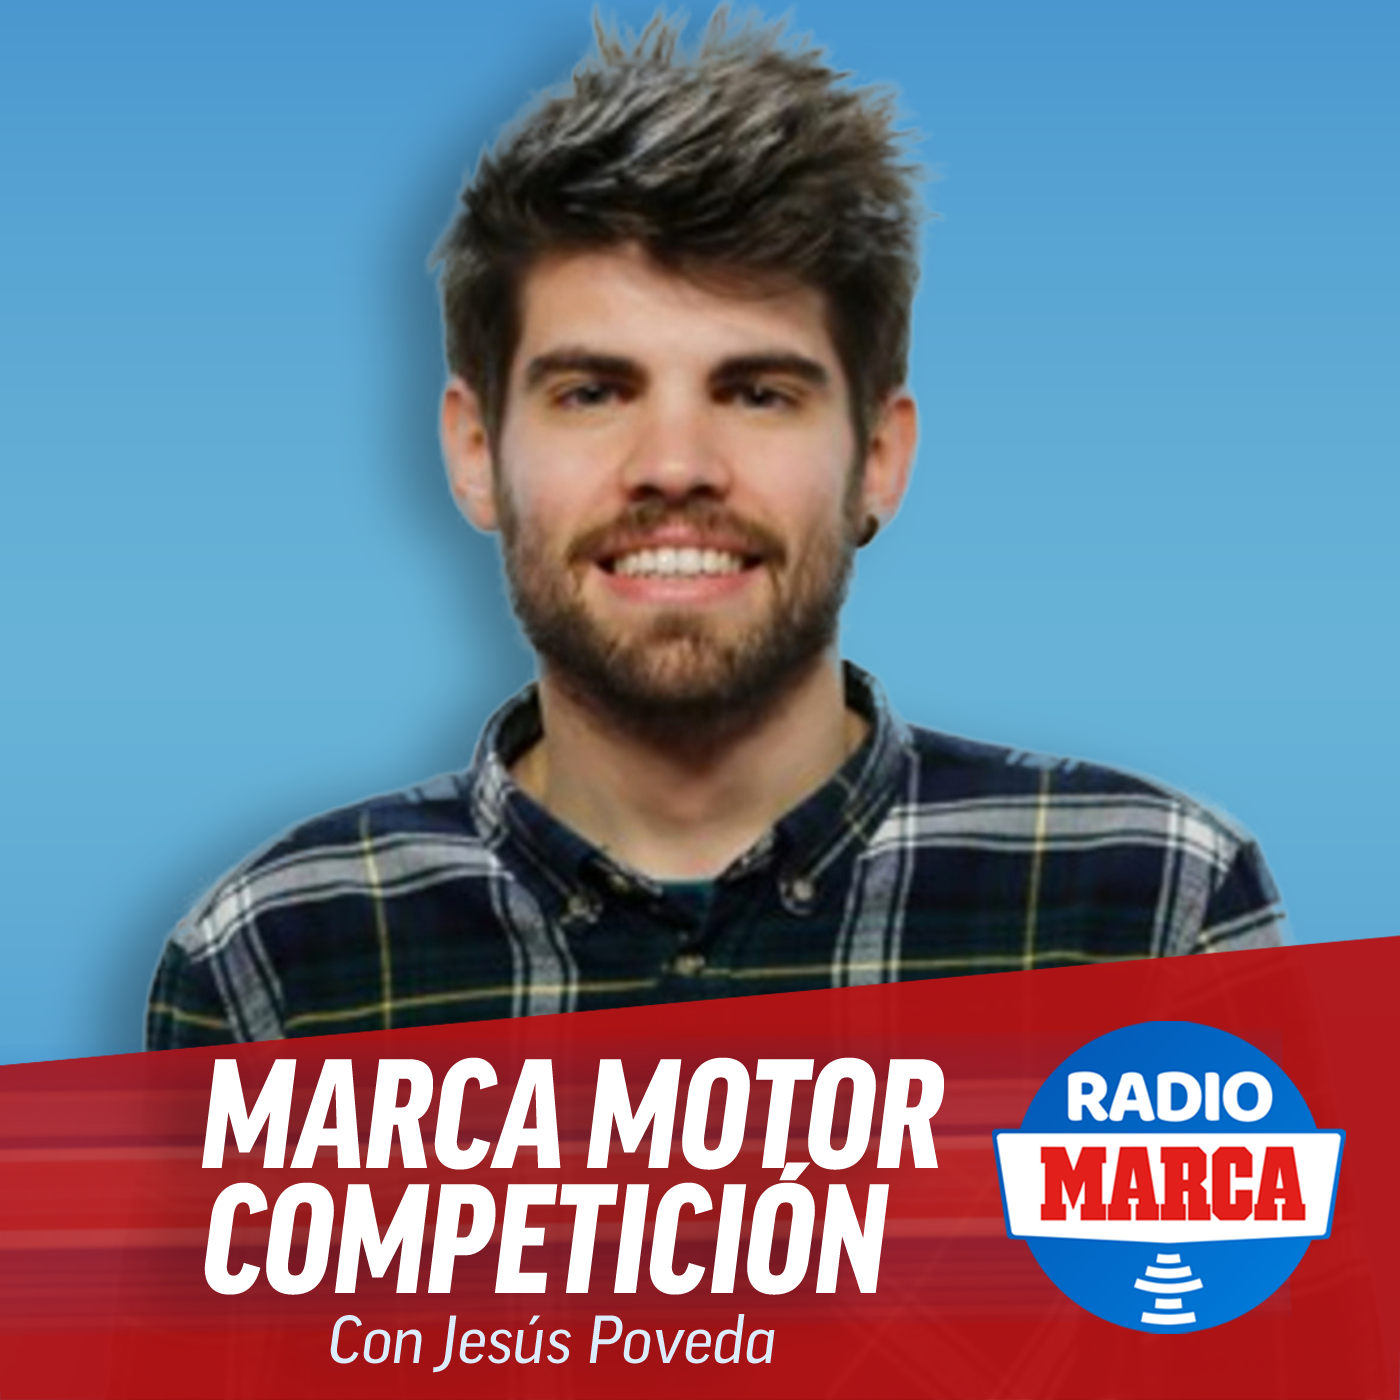 MARCA Motor Competición (31-1-2021)